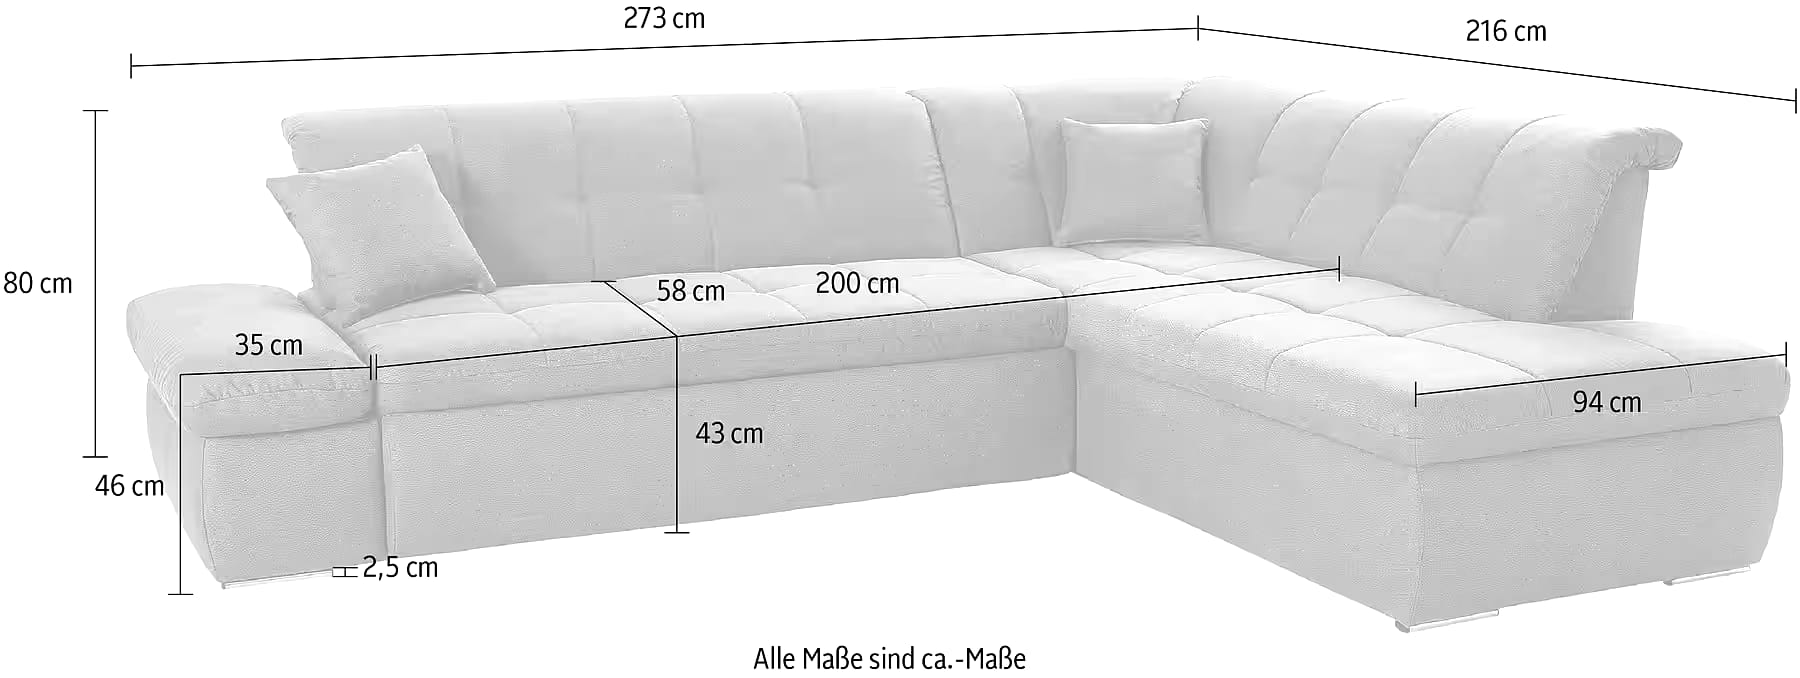 Sofa cama - Moric Artículo No. 8323371449